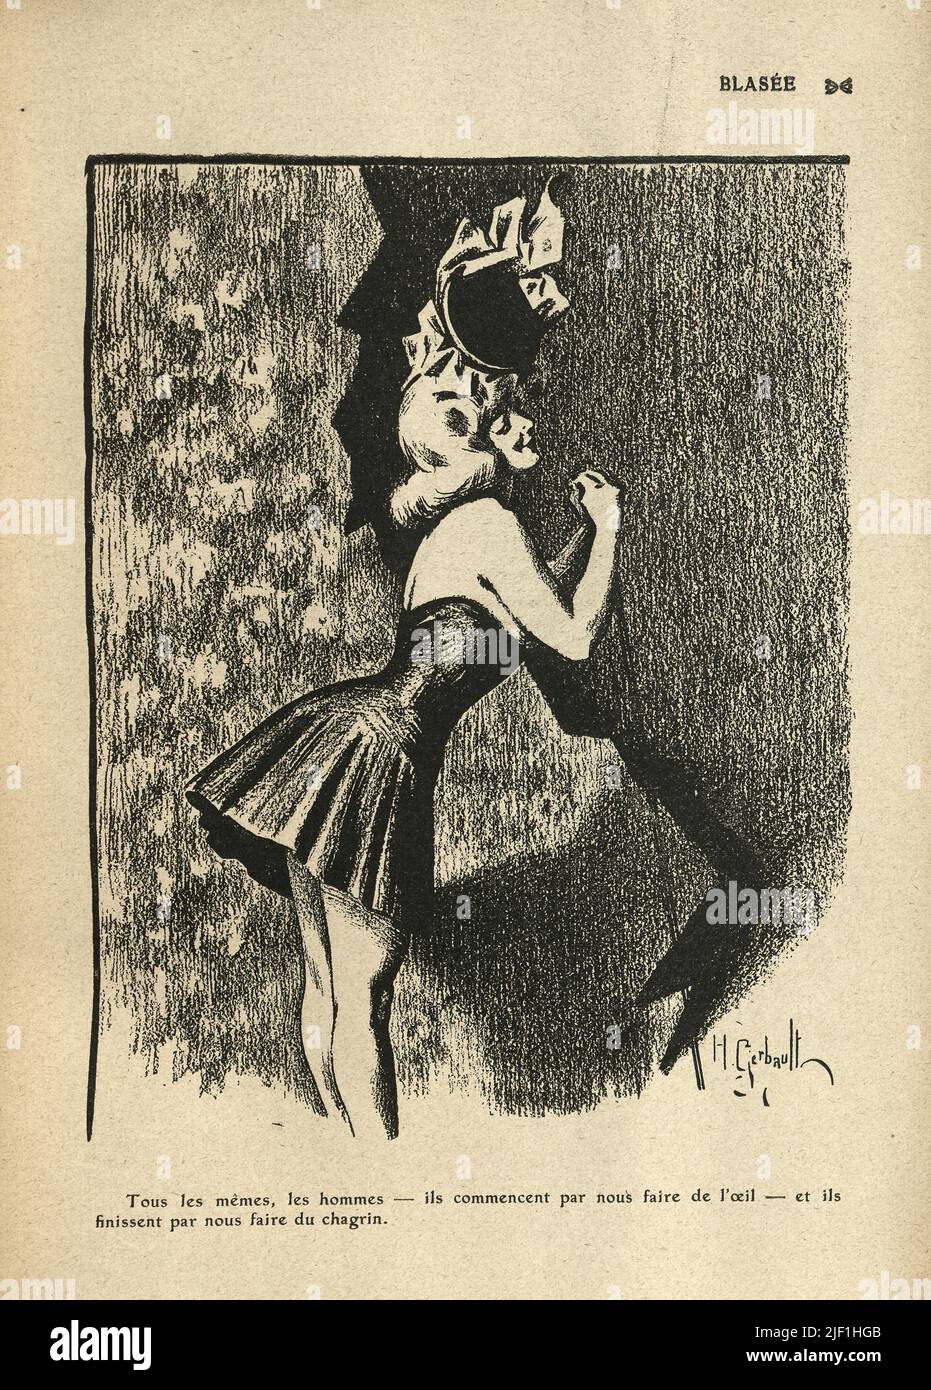 Vintage French cartoon by Henry Gerbault, 1900s. Caricature of a showgirl in short skirt. Blasée. Tous les memes, les hommes - ils commencent par nous faire de l'oeil - et ils finissent par nois faire du chargin Stock Photo